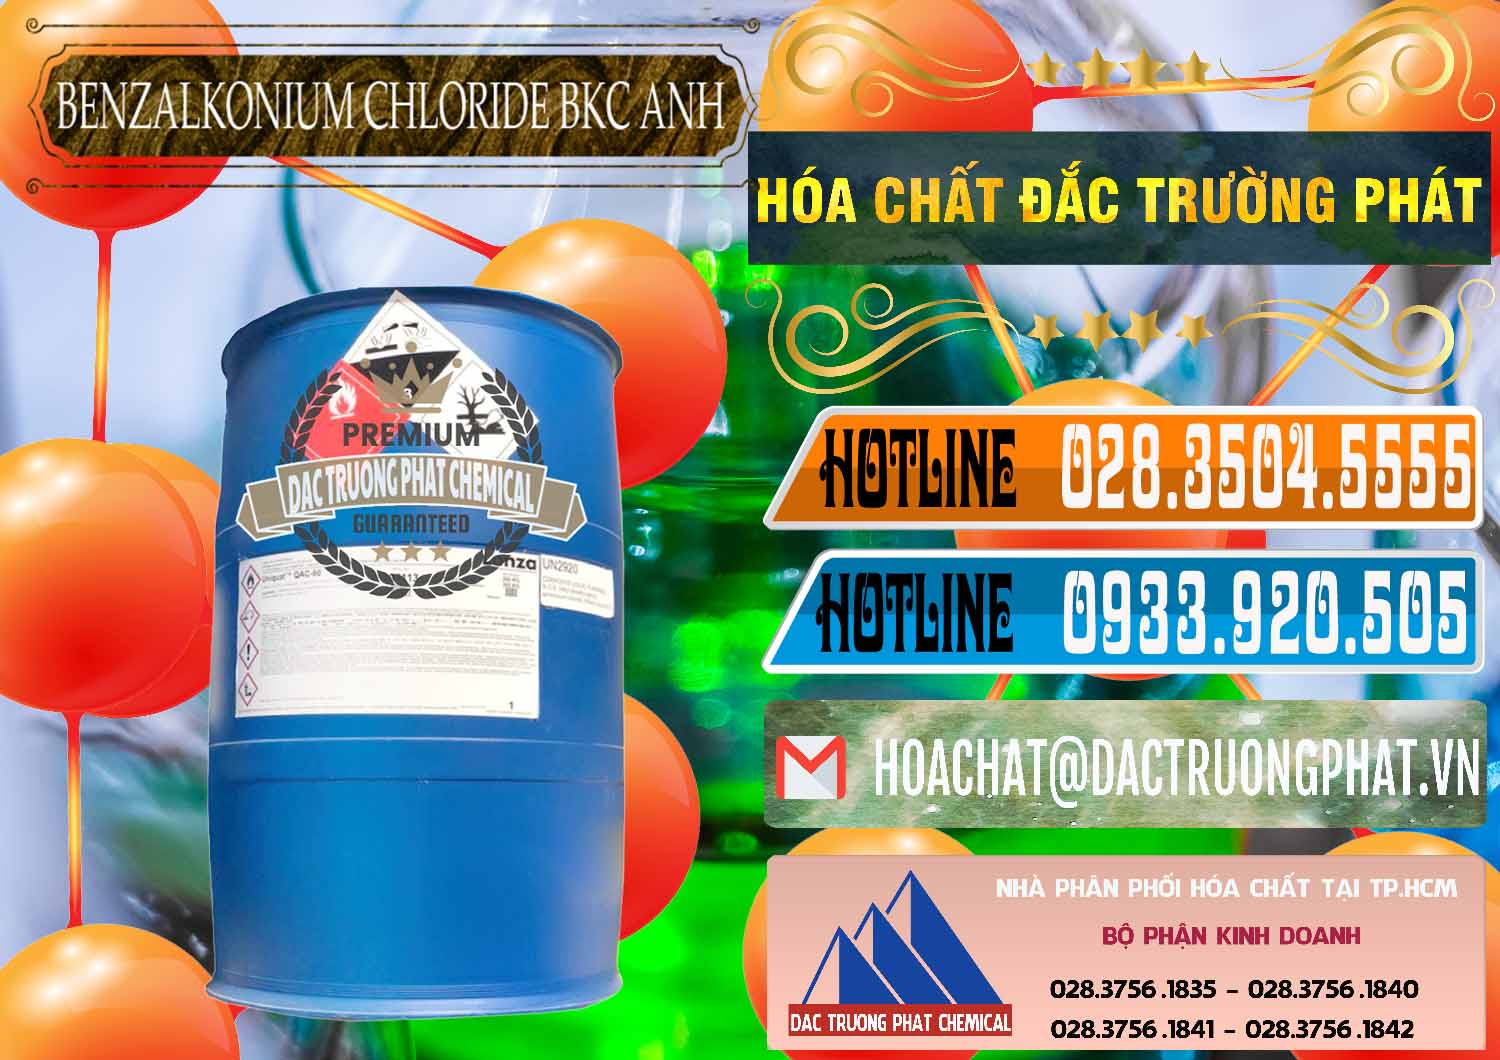 Phân phối _ bán BKC - Benzalkonium Chloride 80% Anh Quốc Uk Kingdoms - 0457 - Cty chuyên phân phối và nhập khẩu hóa chất tại TP.HCM - stmp.net